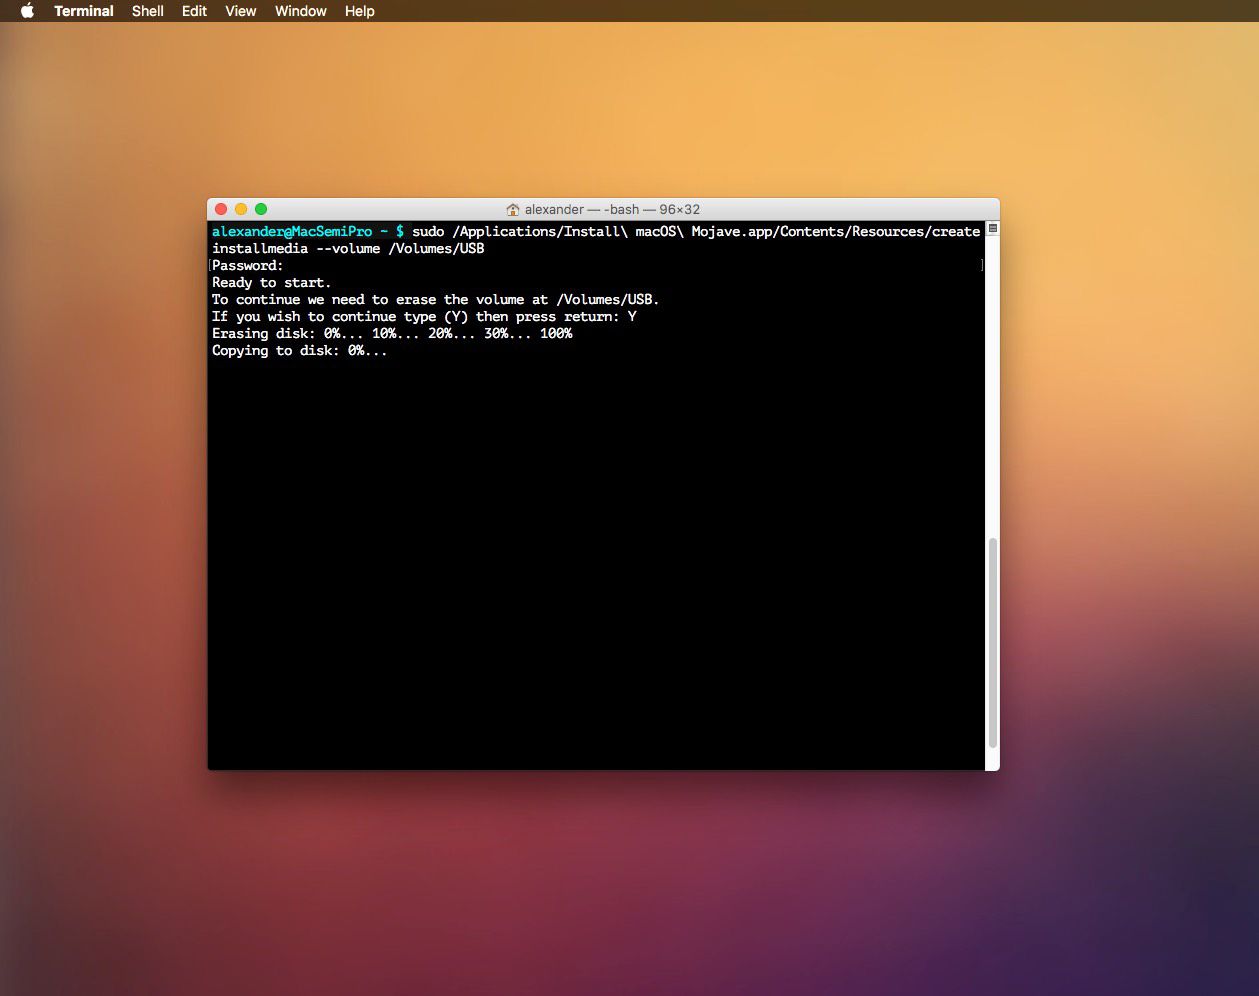 Installmedia-kommandot körs på macOS Terminal